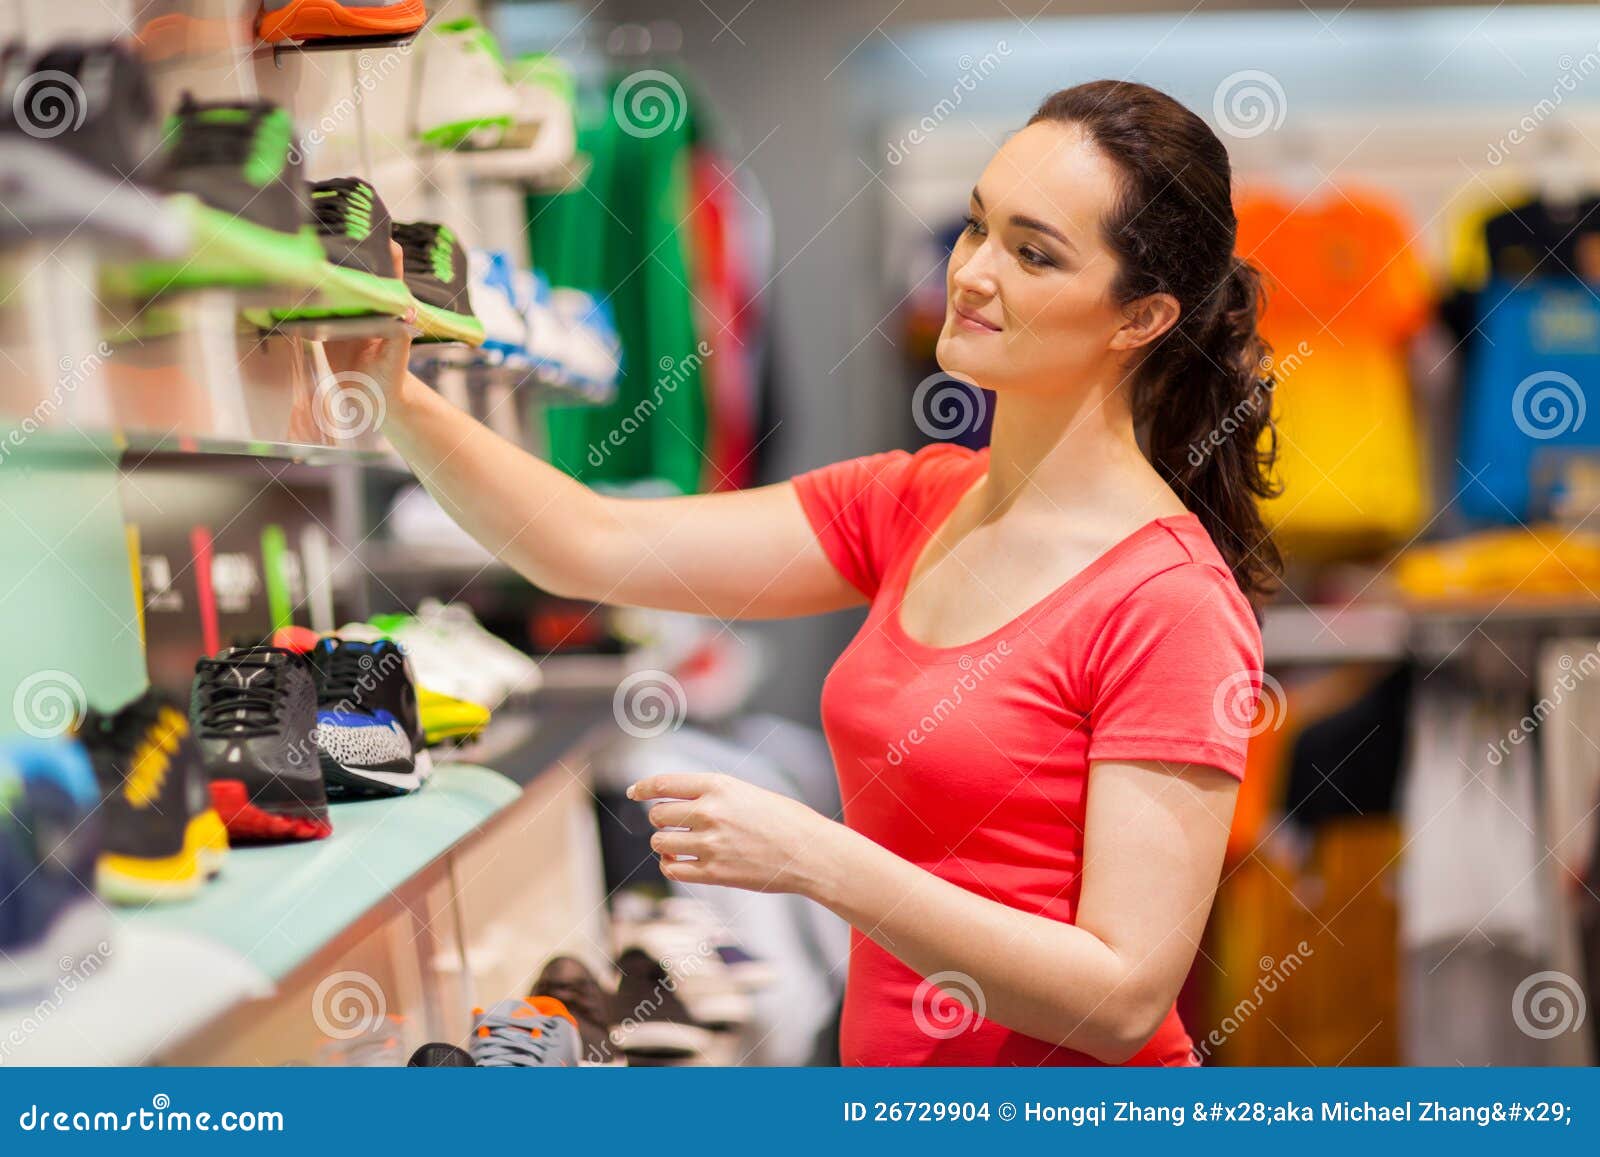 clipart shop assistant - photo #49